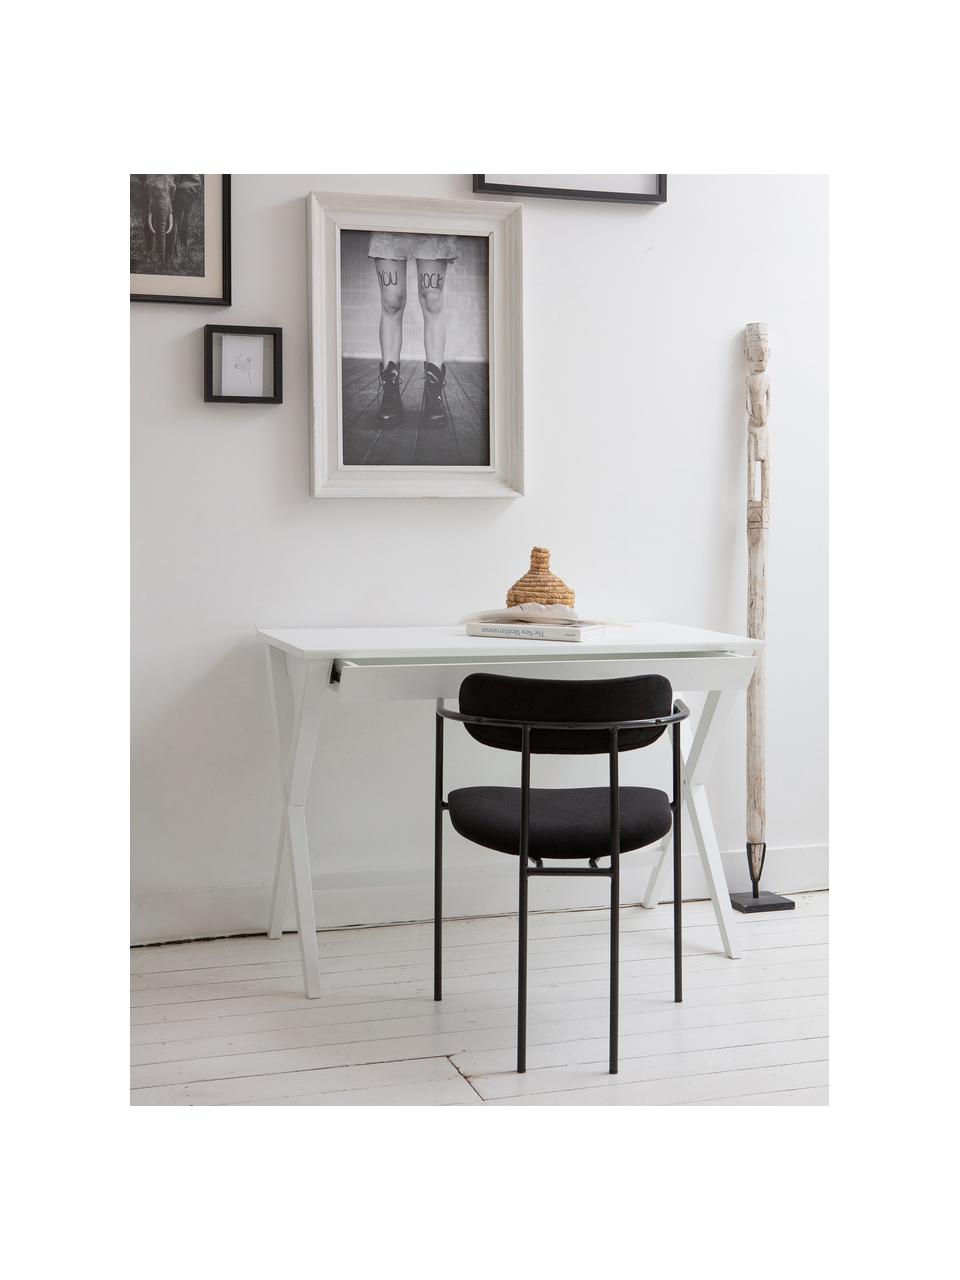 Krzesło z podłokietnikami z aksamitu Elvy, Tapicerka: 100% aksamit poliestrowy, Stelaż: metal powlekany, Czarny aksamit, S 52 x G 50 cm